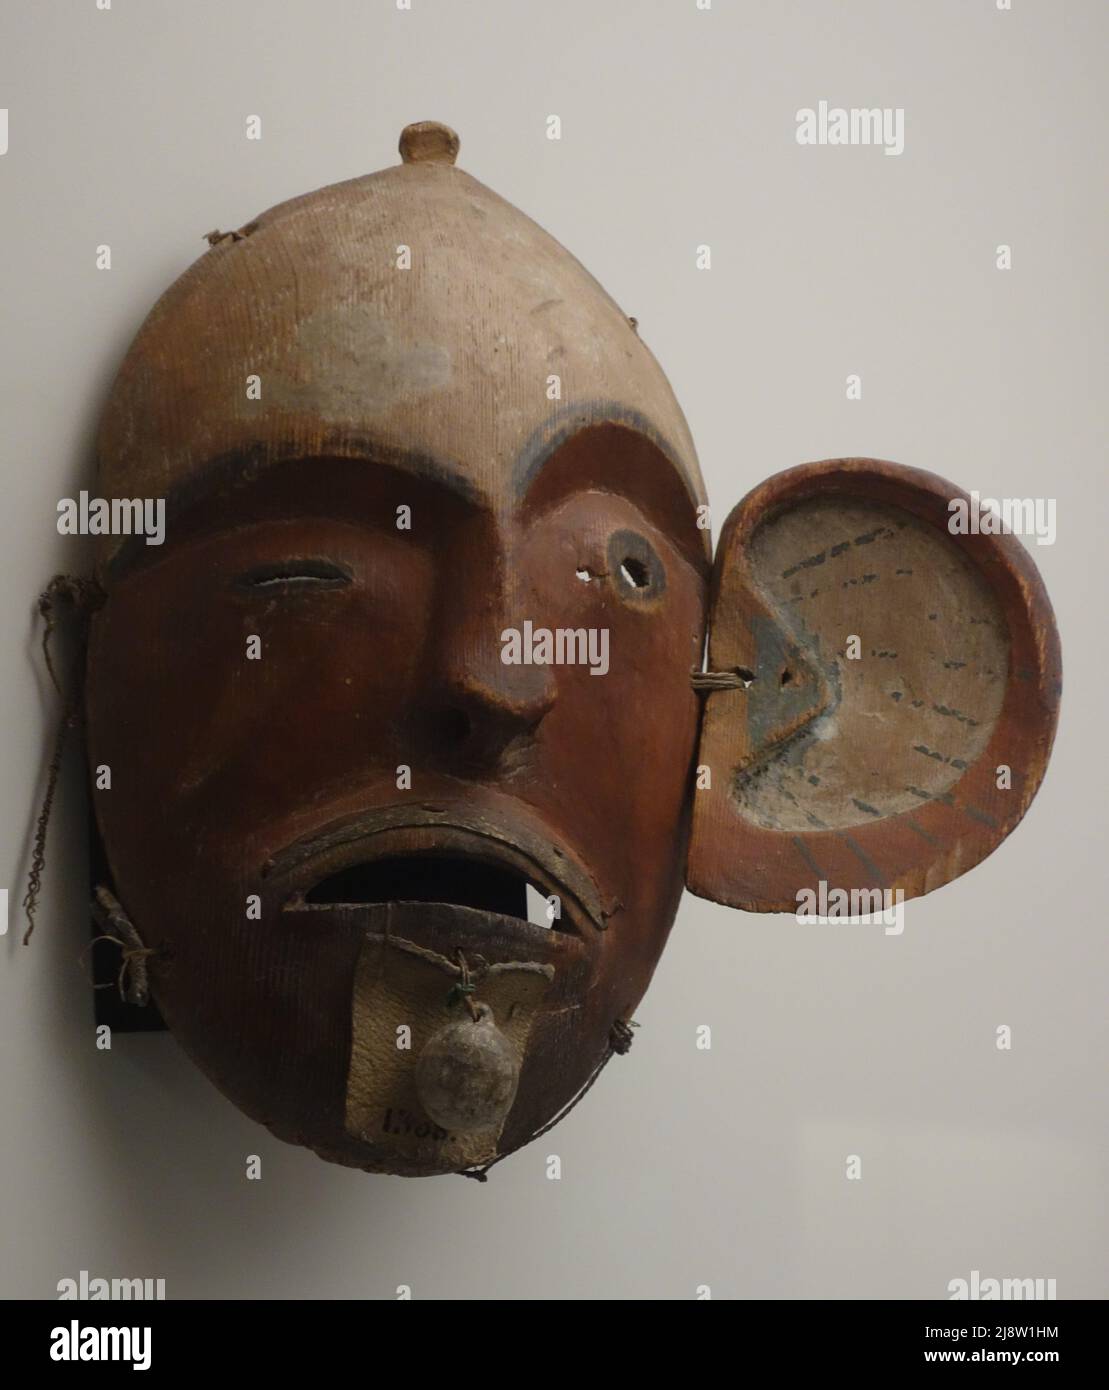 Masque en bois d'un chaman esquimau. Le masque a été fabriqué selon ses visions sous les effets des hallucinogènes. XVII siècle. Museo de America Banque D'Images